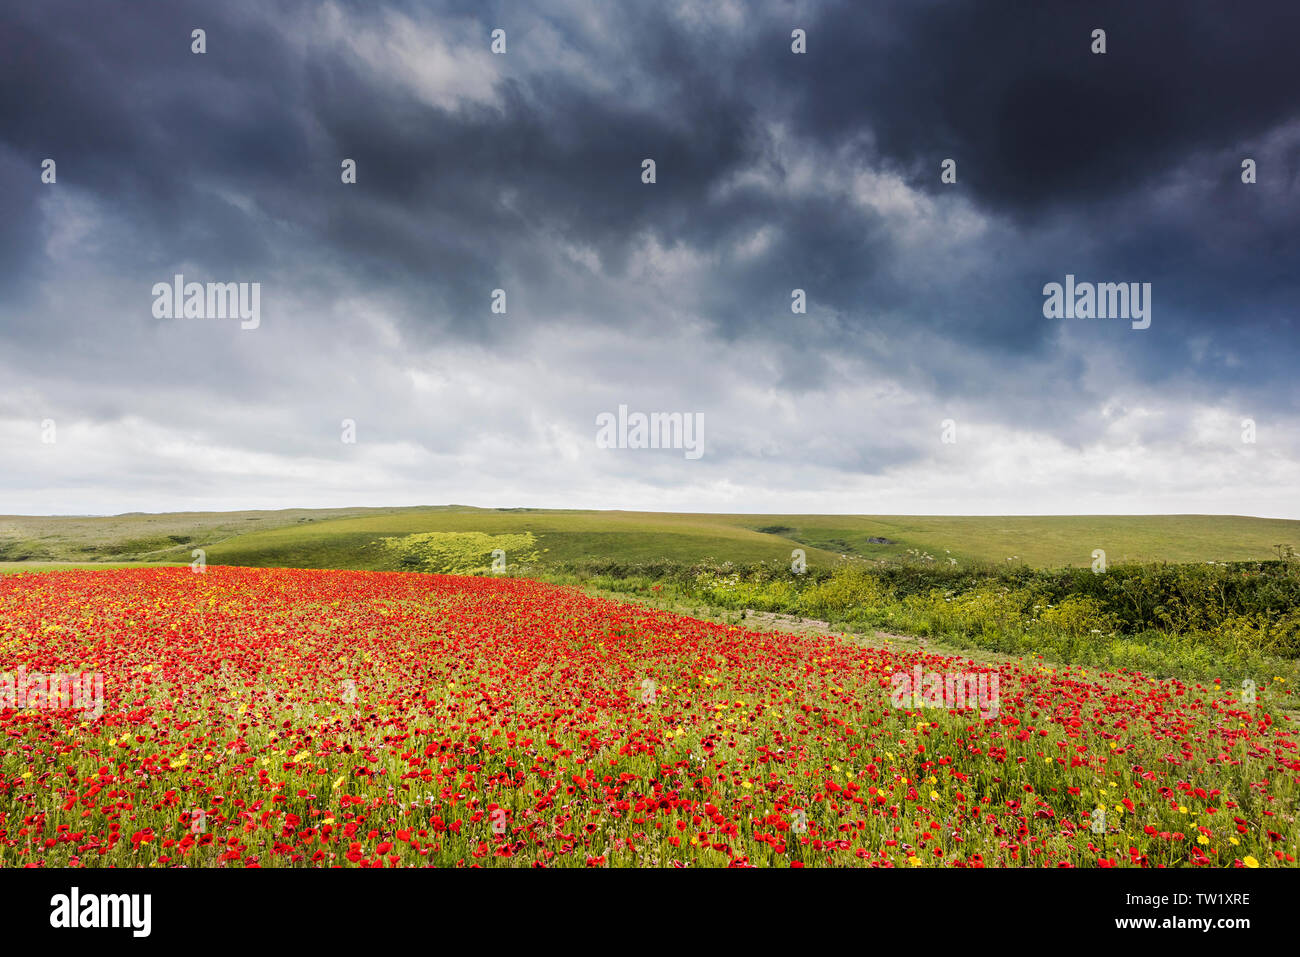 Ominösen regen Wolken über einem Feld der Gemeinsamen Klatschmohn Papaver rhoeas und Mais Glebionis segetum Ringelblumen wachsen auf West Pentire in Newquay in Stockfoto